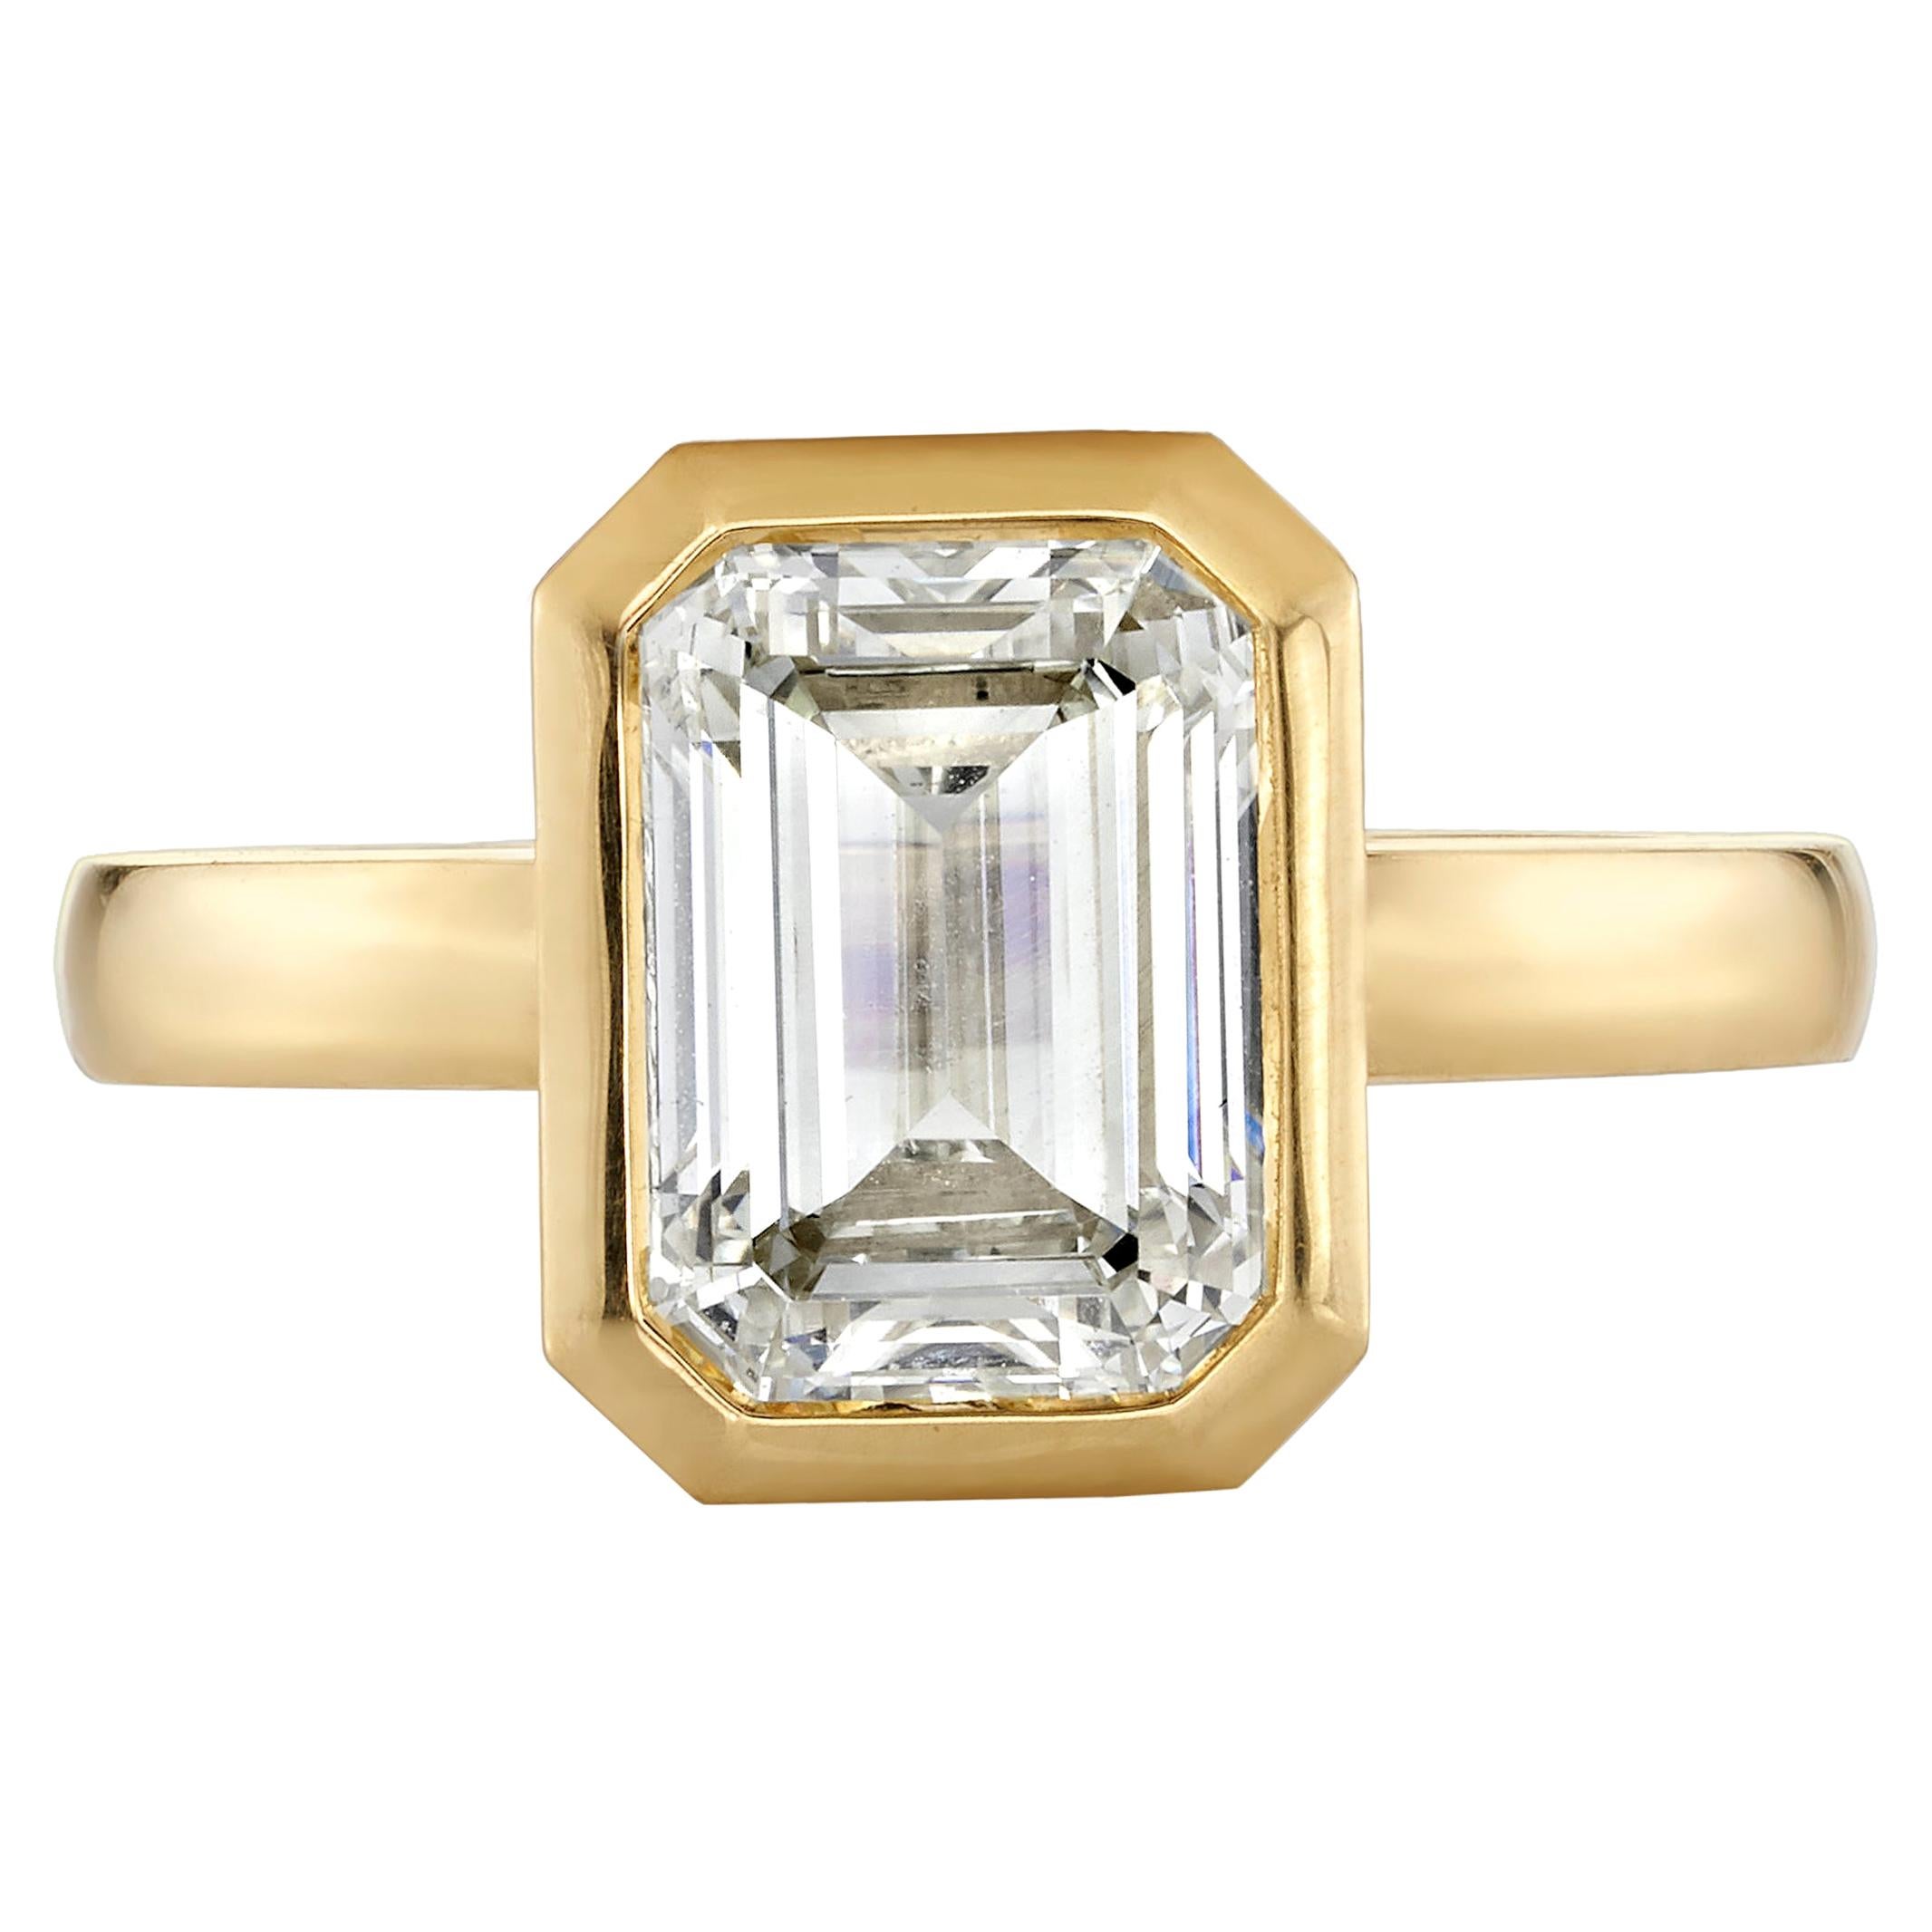 3.01 Carat GIA Certified Emerald Cut Diamond Mounted in an 18 Karat Gold Ring